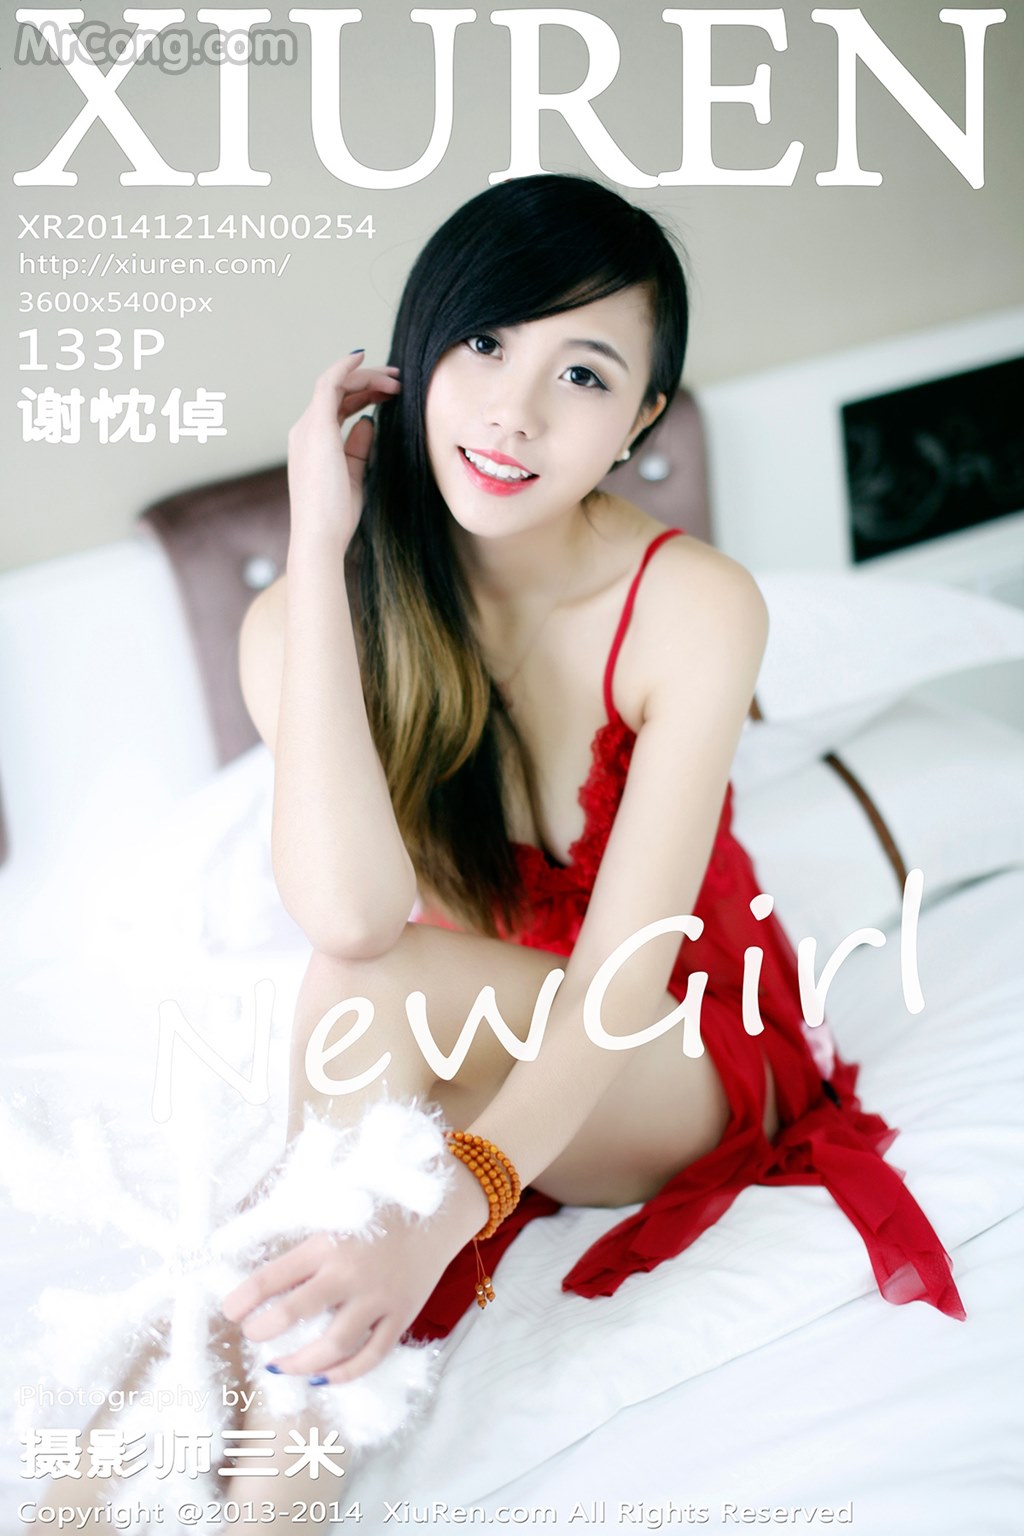 XIUREN No. 2254: Model Xie Chen Zhuo (谢忱 倬) (134 pictures) photo 7-6